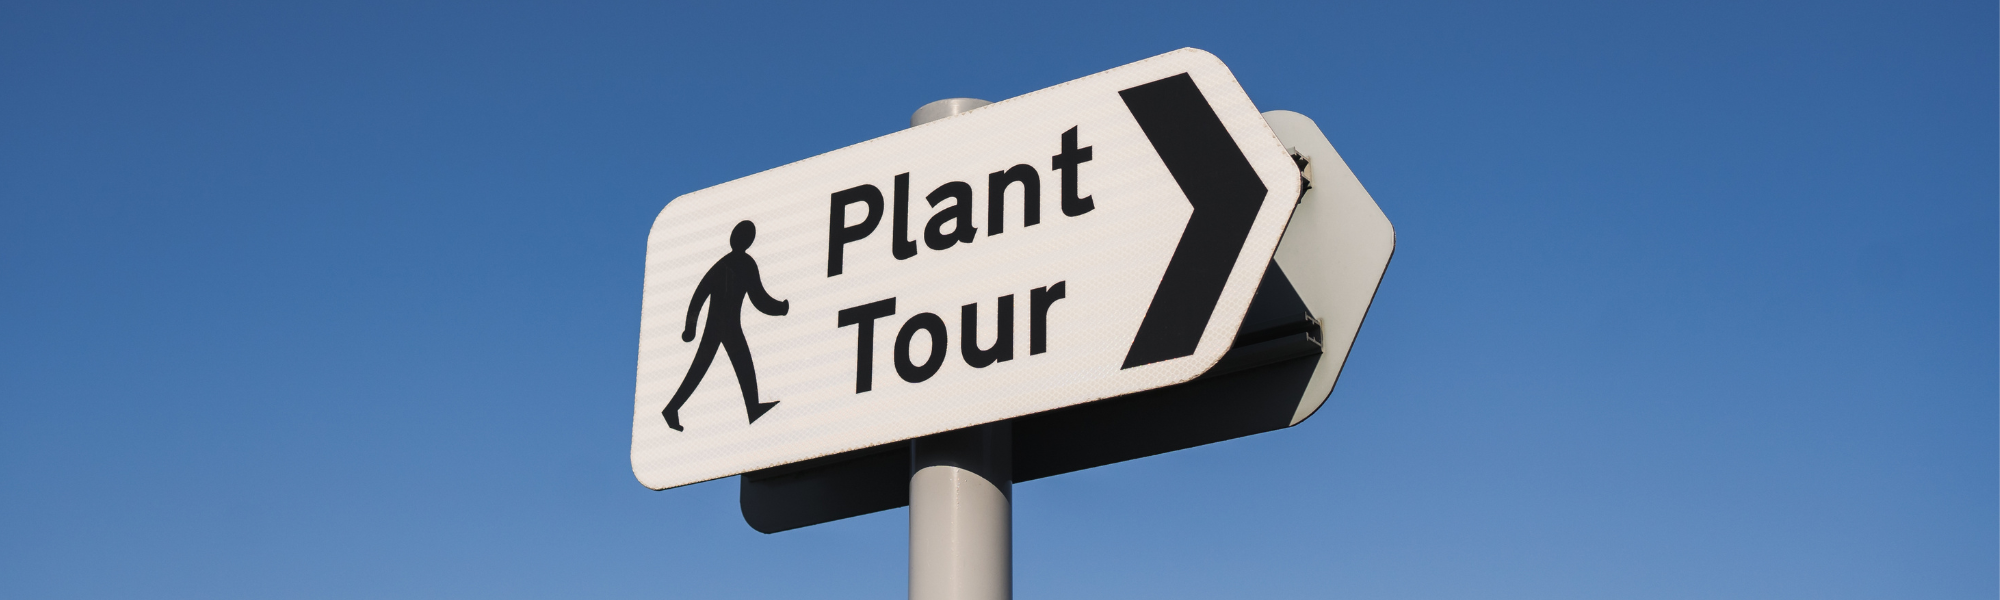 Auf einem Straßenschild in Pfeilform ist die Aufschrift Plant Tour zu lesen. Außerdem ist auf dem Schild ein Icon von einem Männchen, das in Richtung der Tour läuft